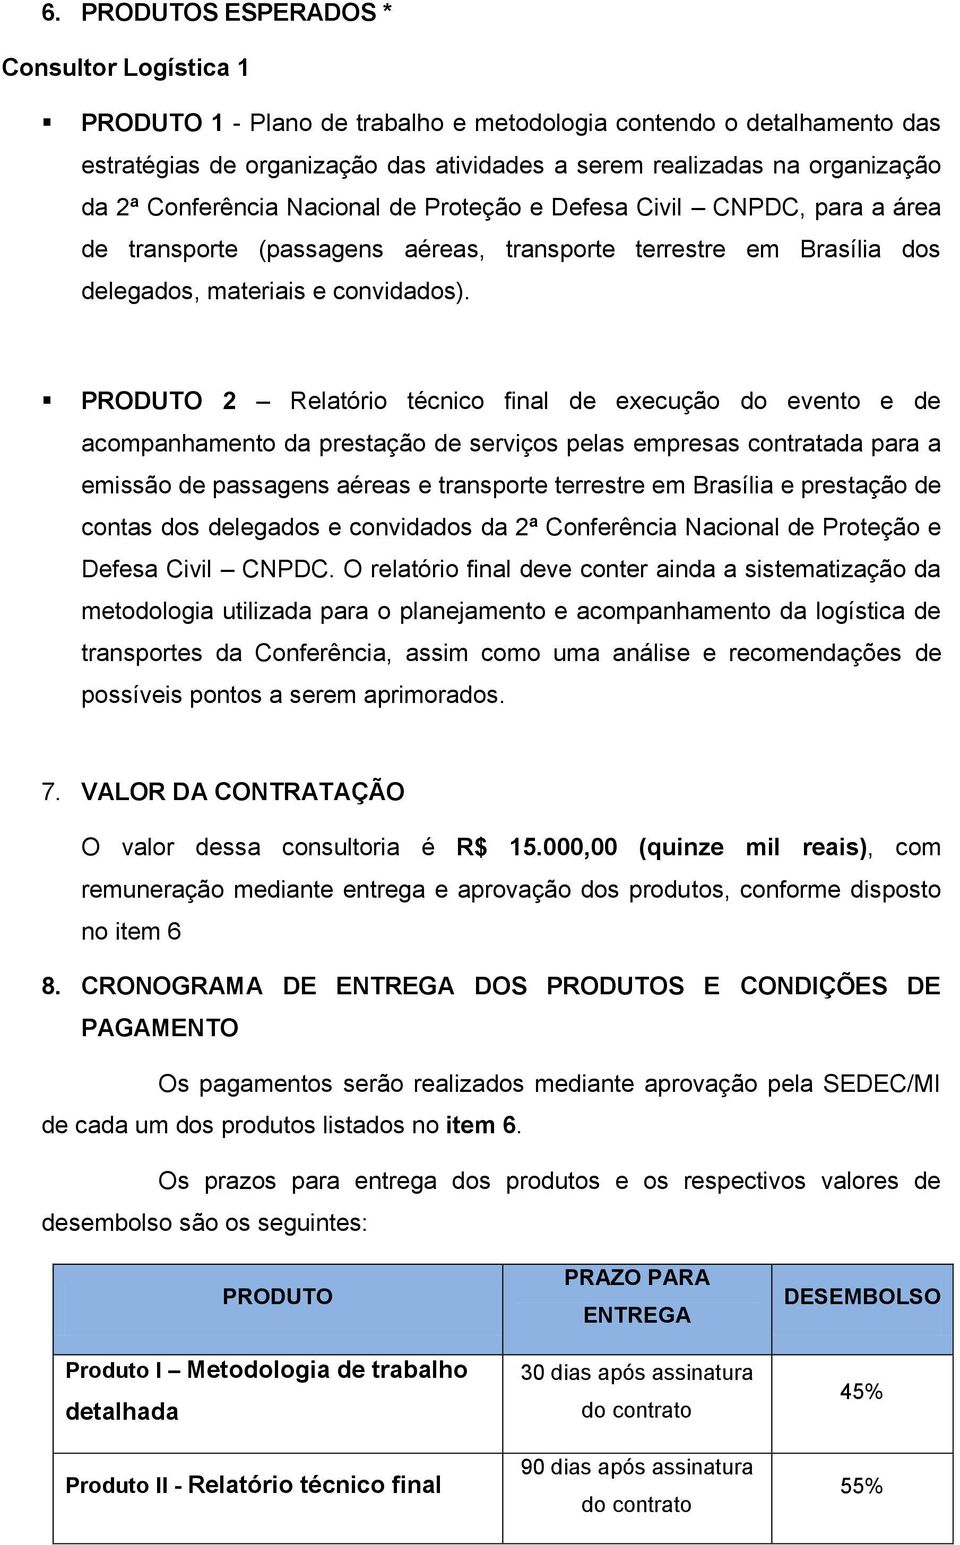 PRODUTO 2 Relatório técnico final de execução do evento e de acompanhamento da prestação de serviços pelas empresas contratada para a emissão de passagens aéreas e transporte terrestre em Brasília e